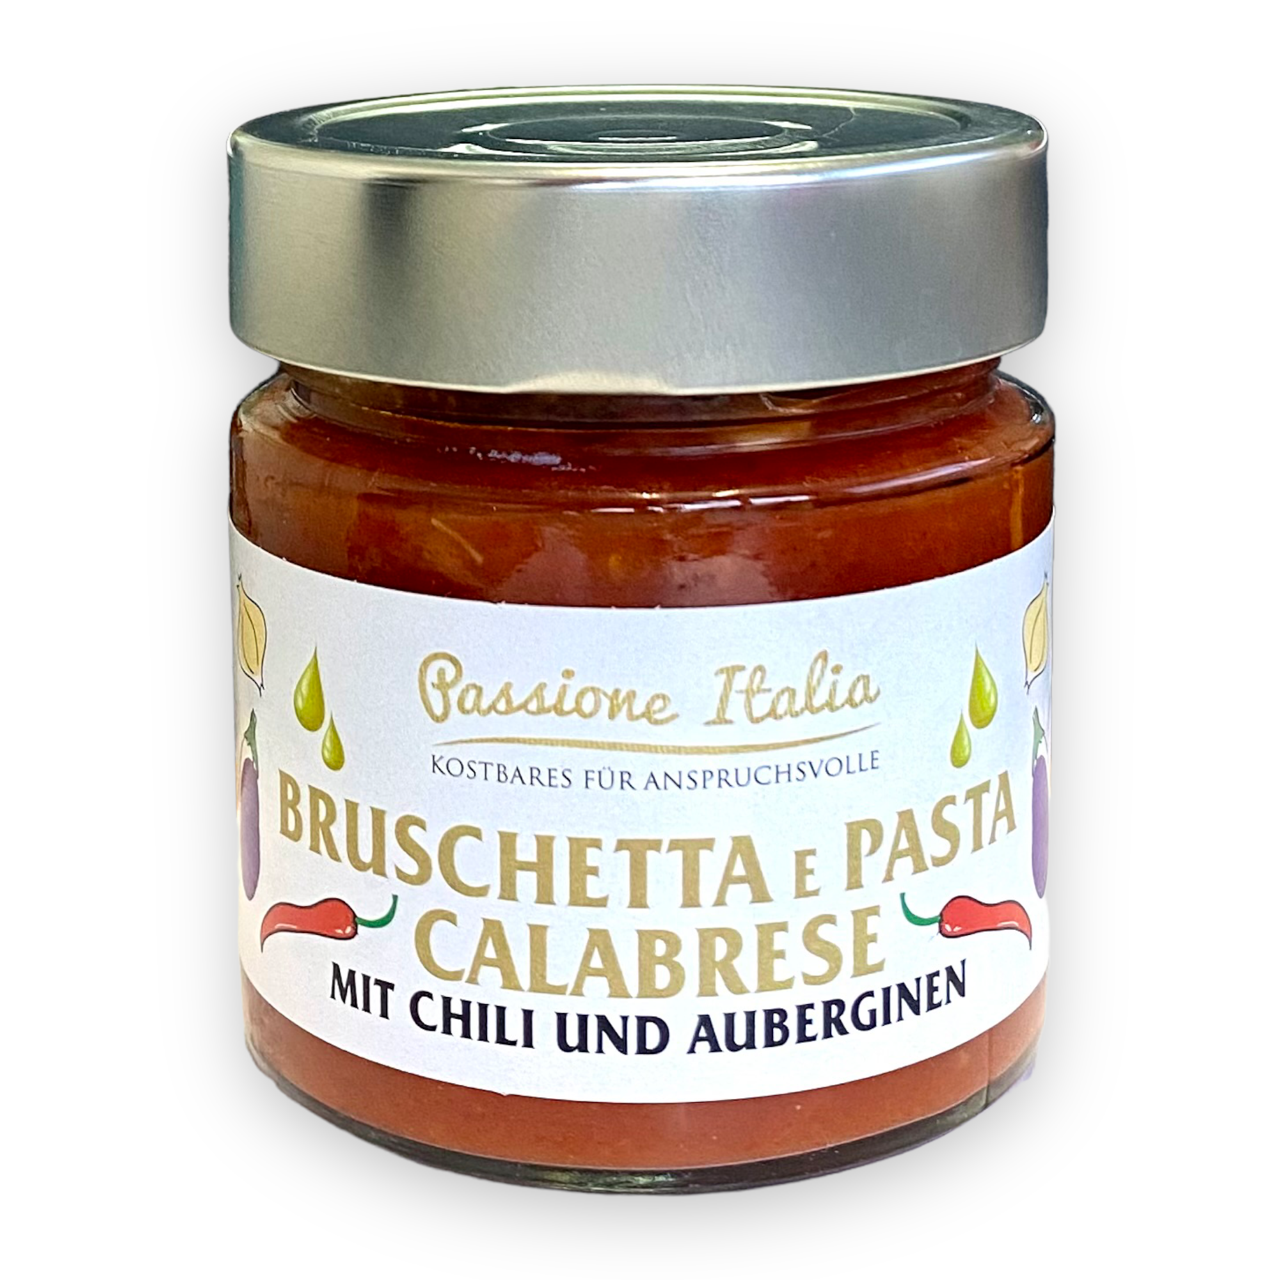 Bruschetta & Pasta Calabrese - Tomatensoße mit Chili & Auberginen